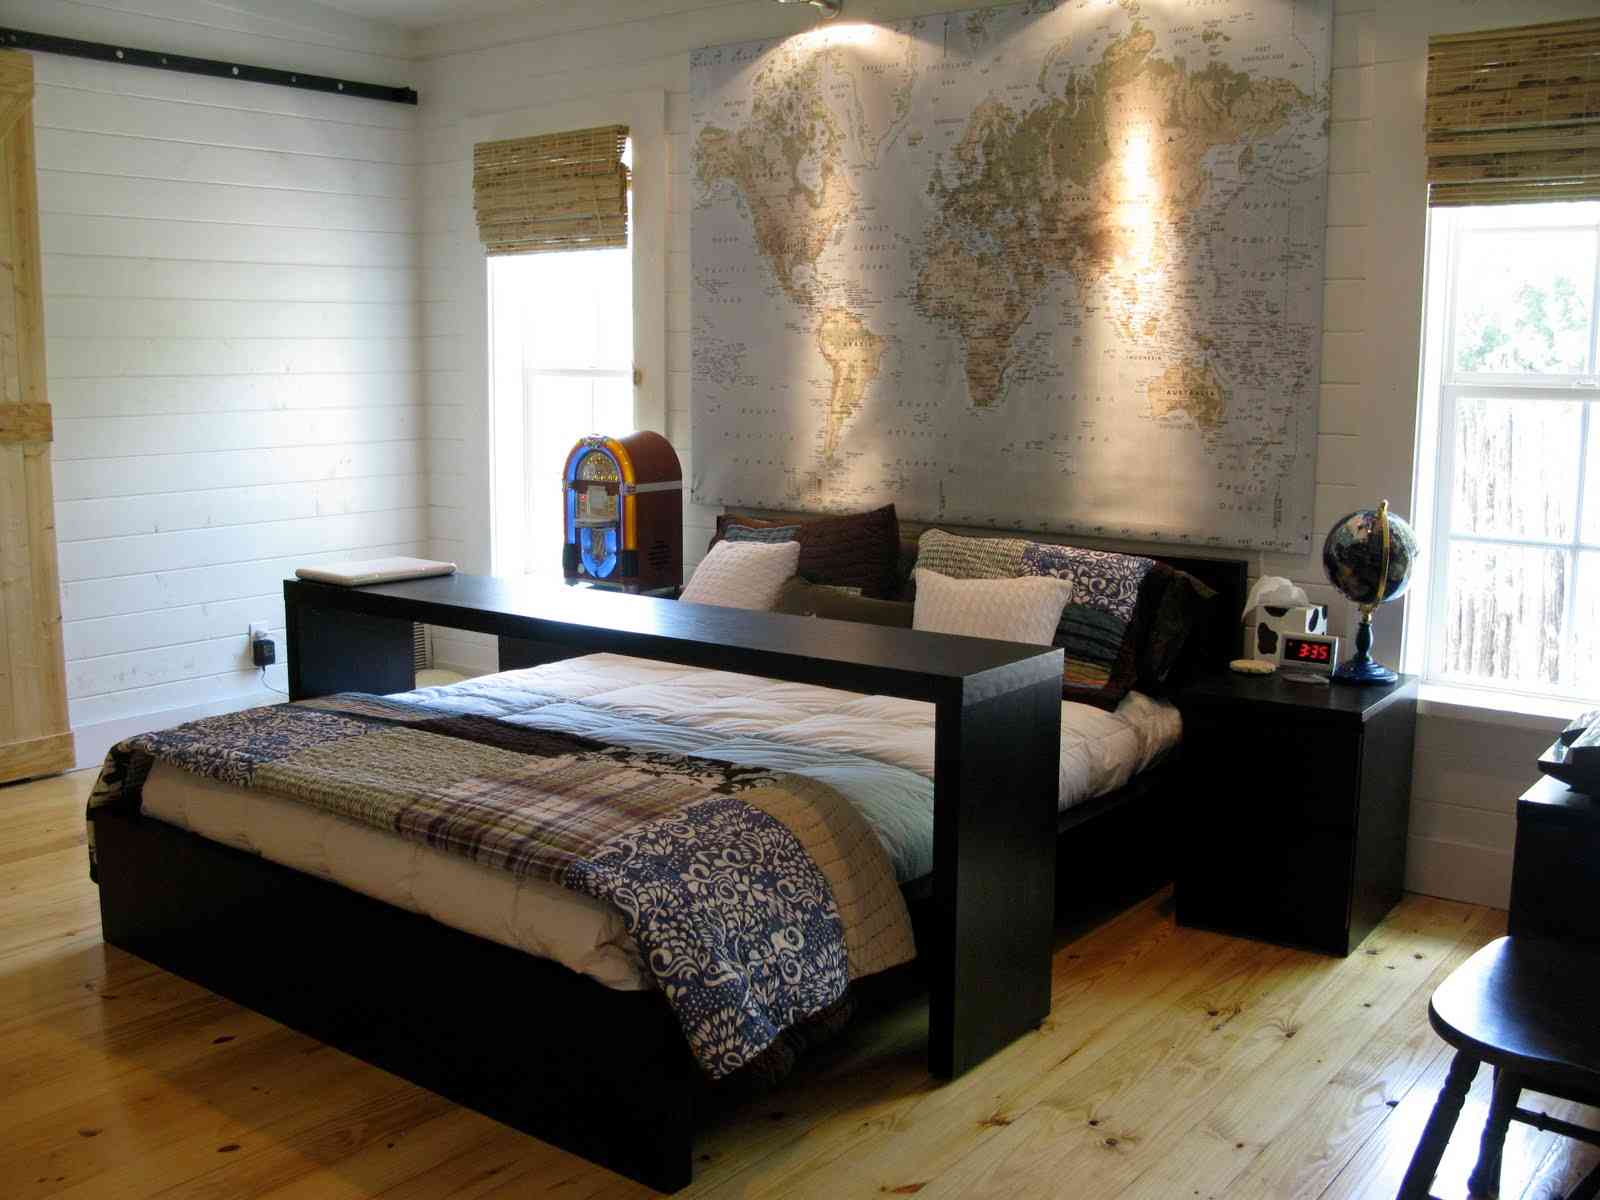 Bedroom furniture from IKEA  new bedroom 2015 ~ Room 